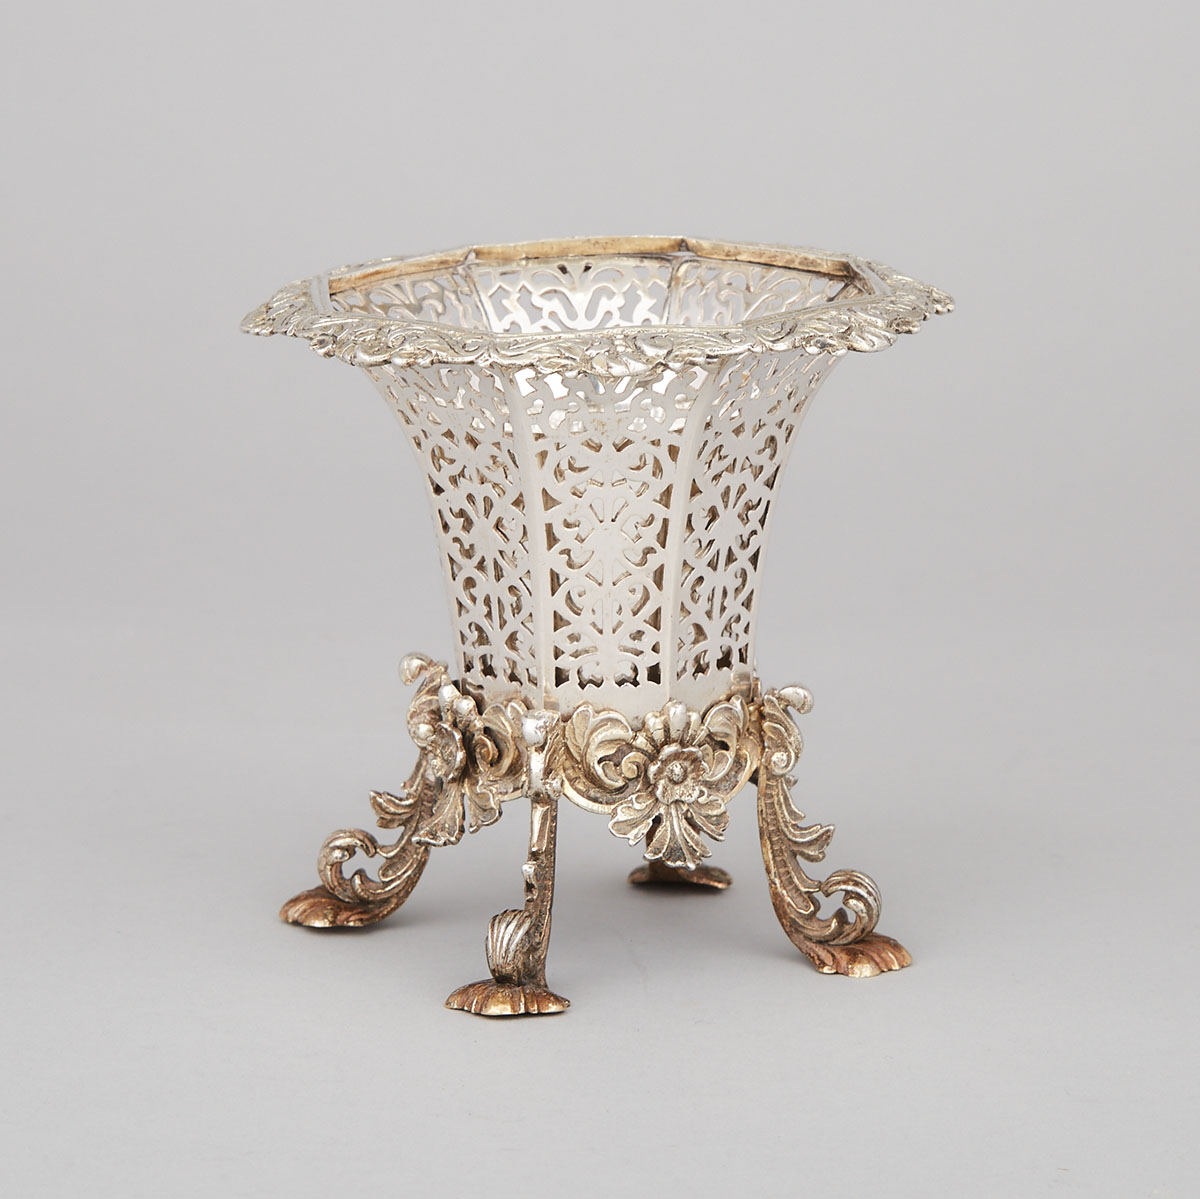 Turkish Silver Pierced Vase, c.1900